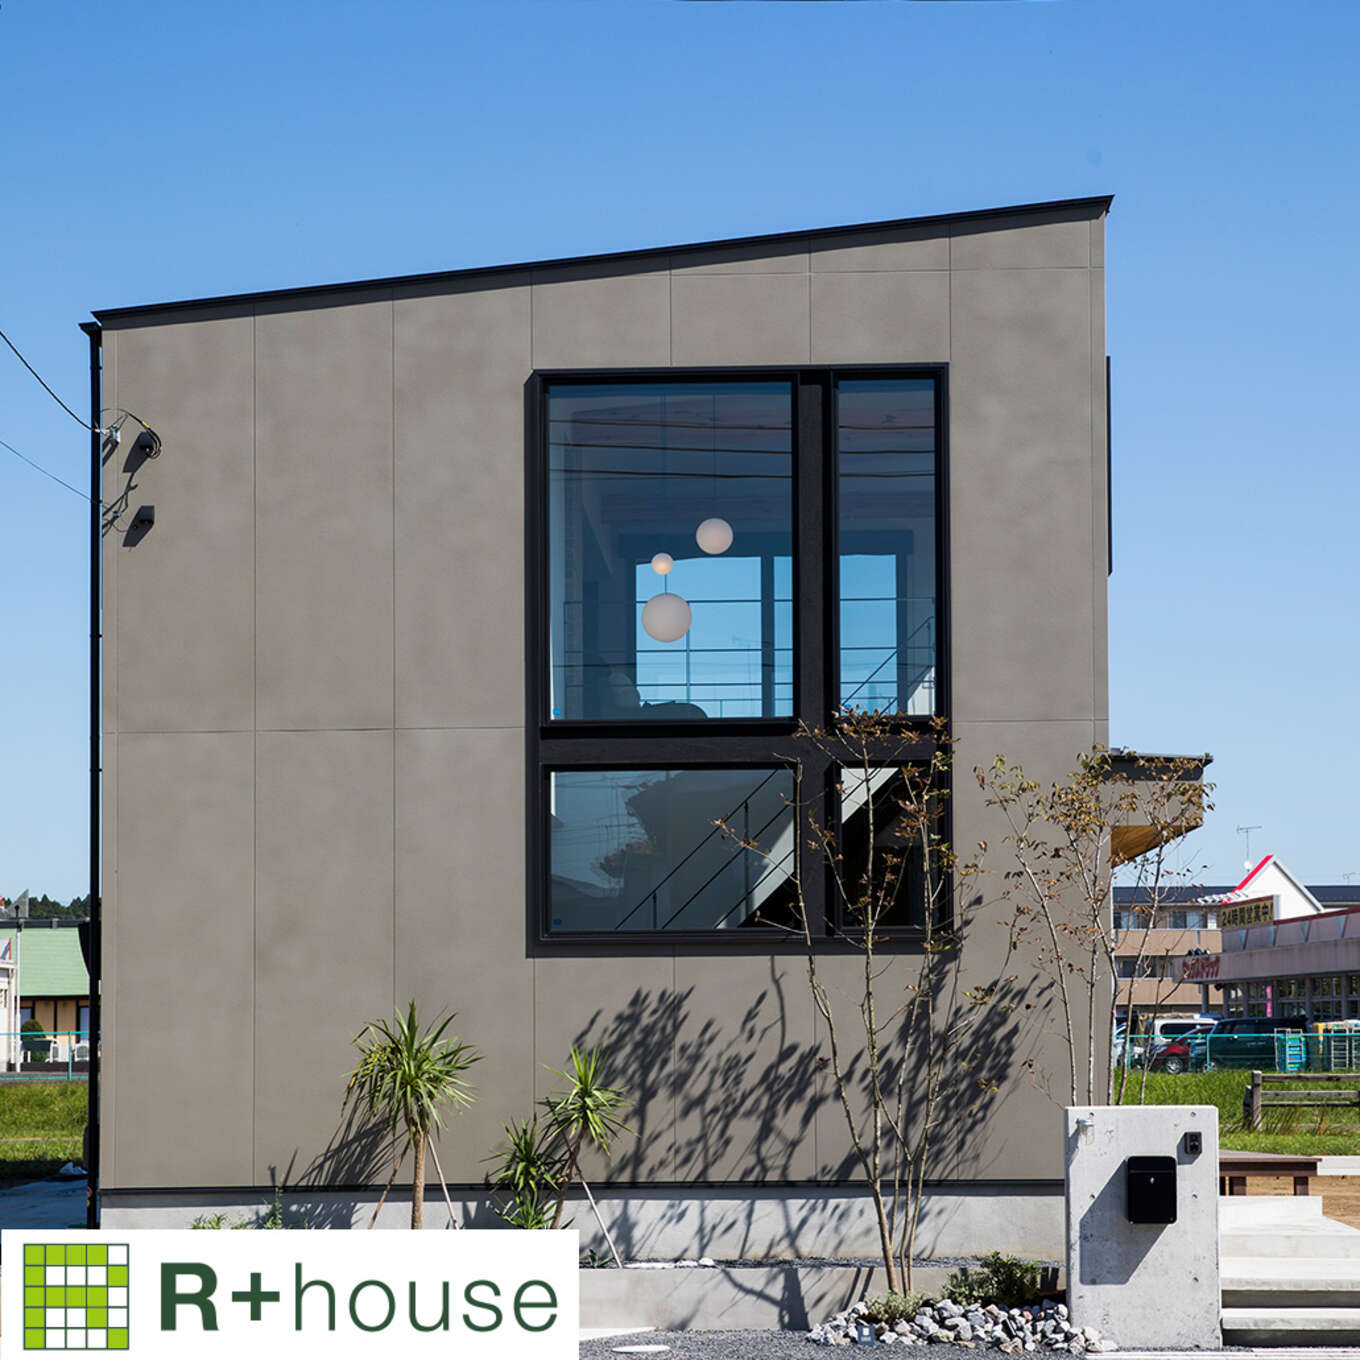 R+houseの物件の写真です。大きな窓がひときわ目を引く四角い家。